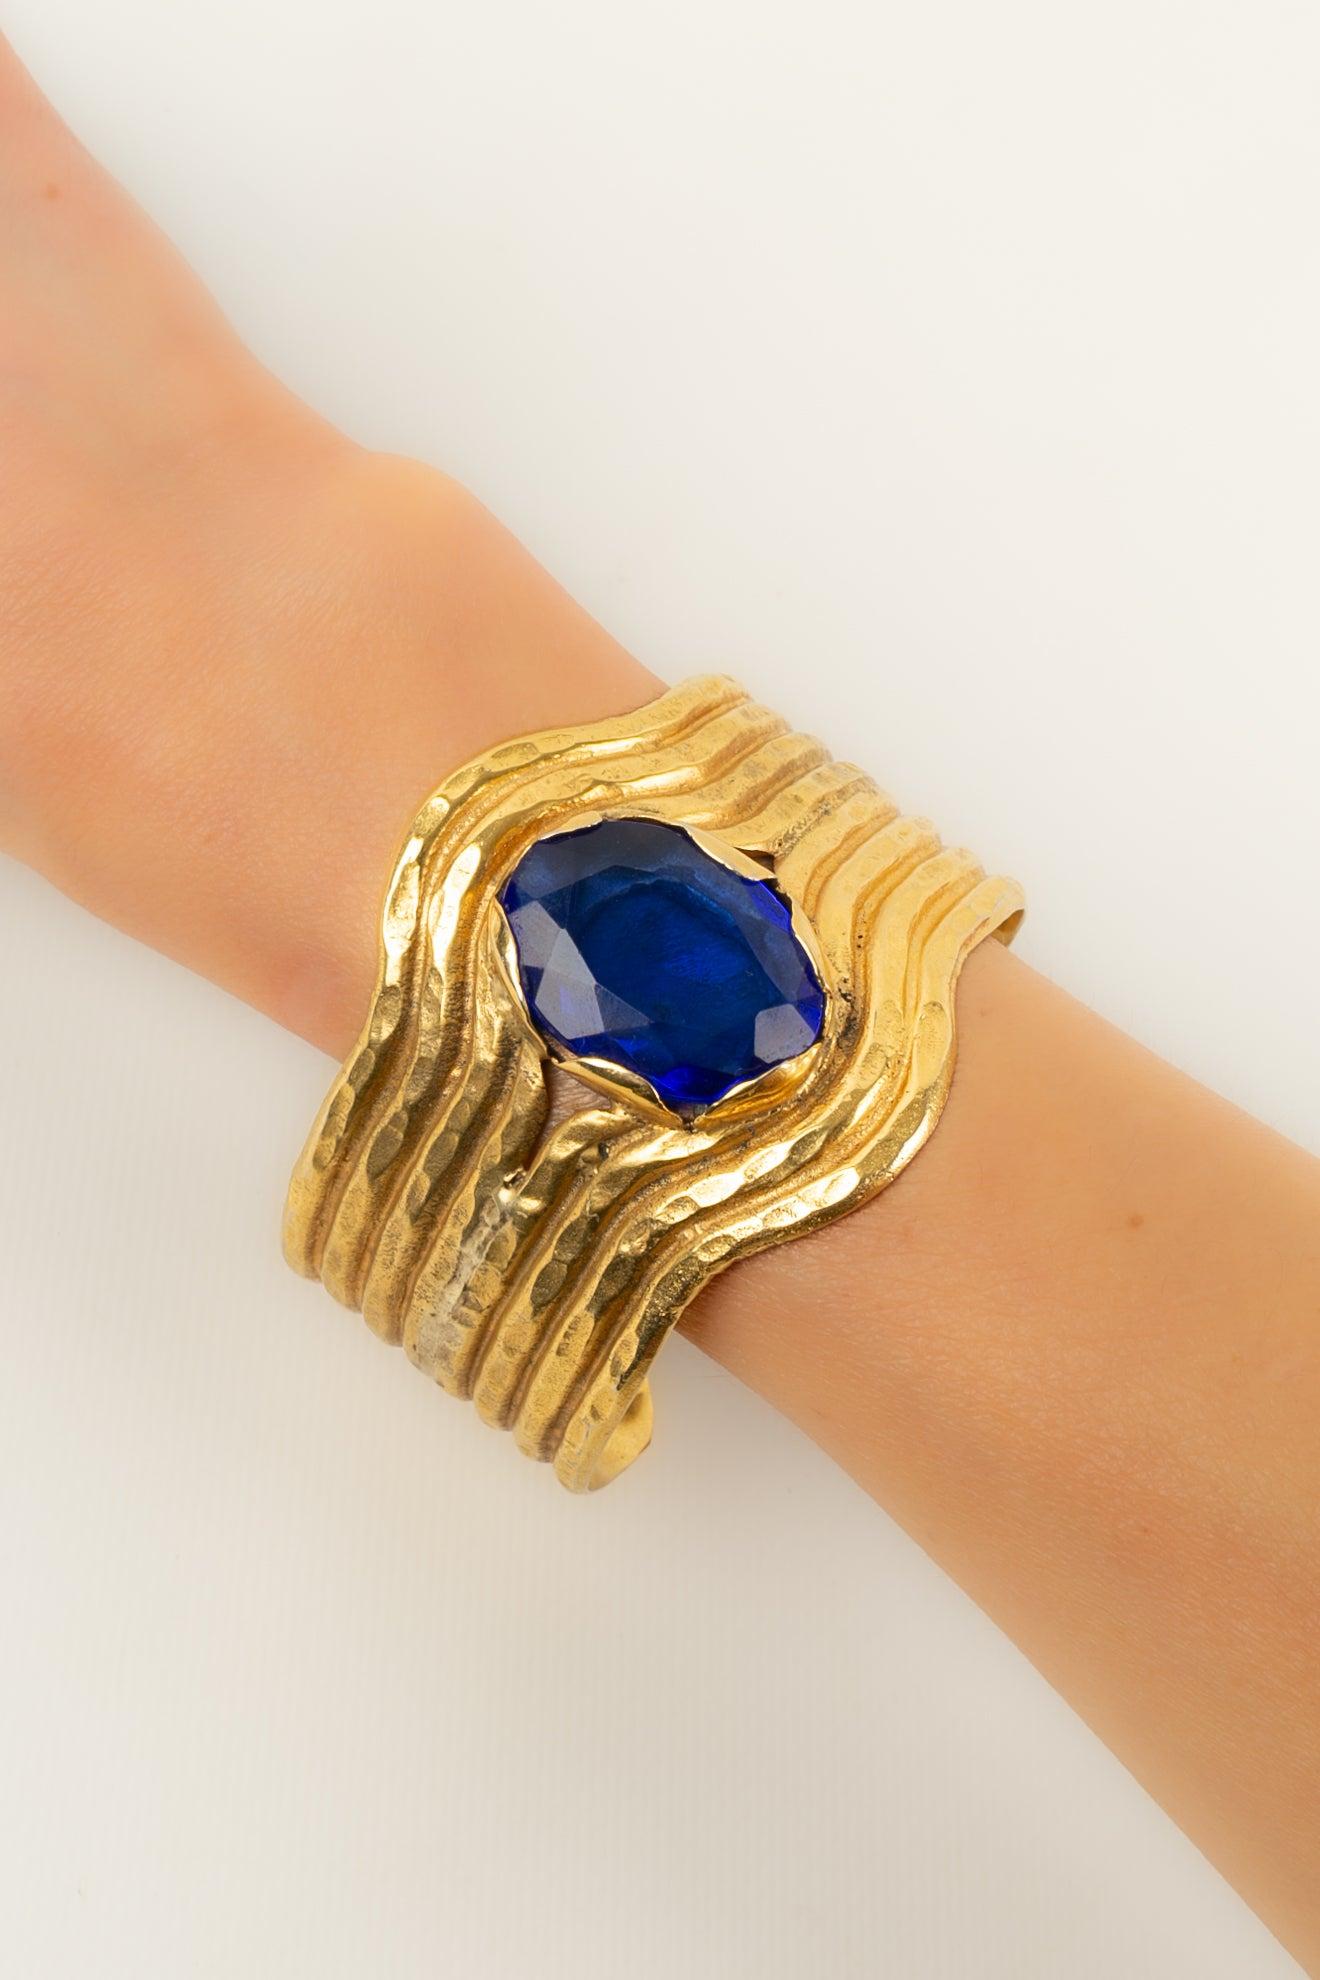 Gianfranco Ferré - (Made in Italy) Bracelet en métal doré surmonté d'un imposant strass bleu.

Informations complémentaires :
Condit : Très bon état.
Dimensions : Longueur : 17 cm

Référence du vendeur : BRA181
